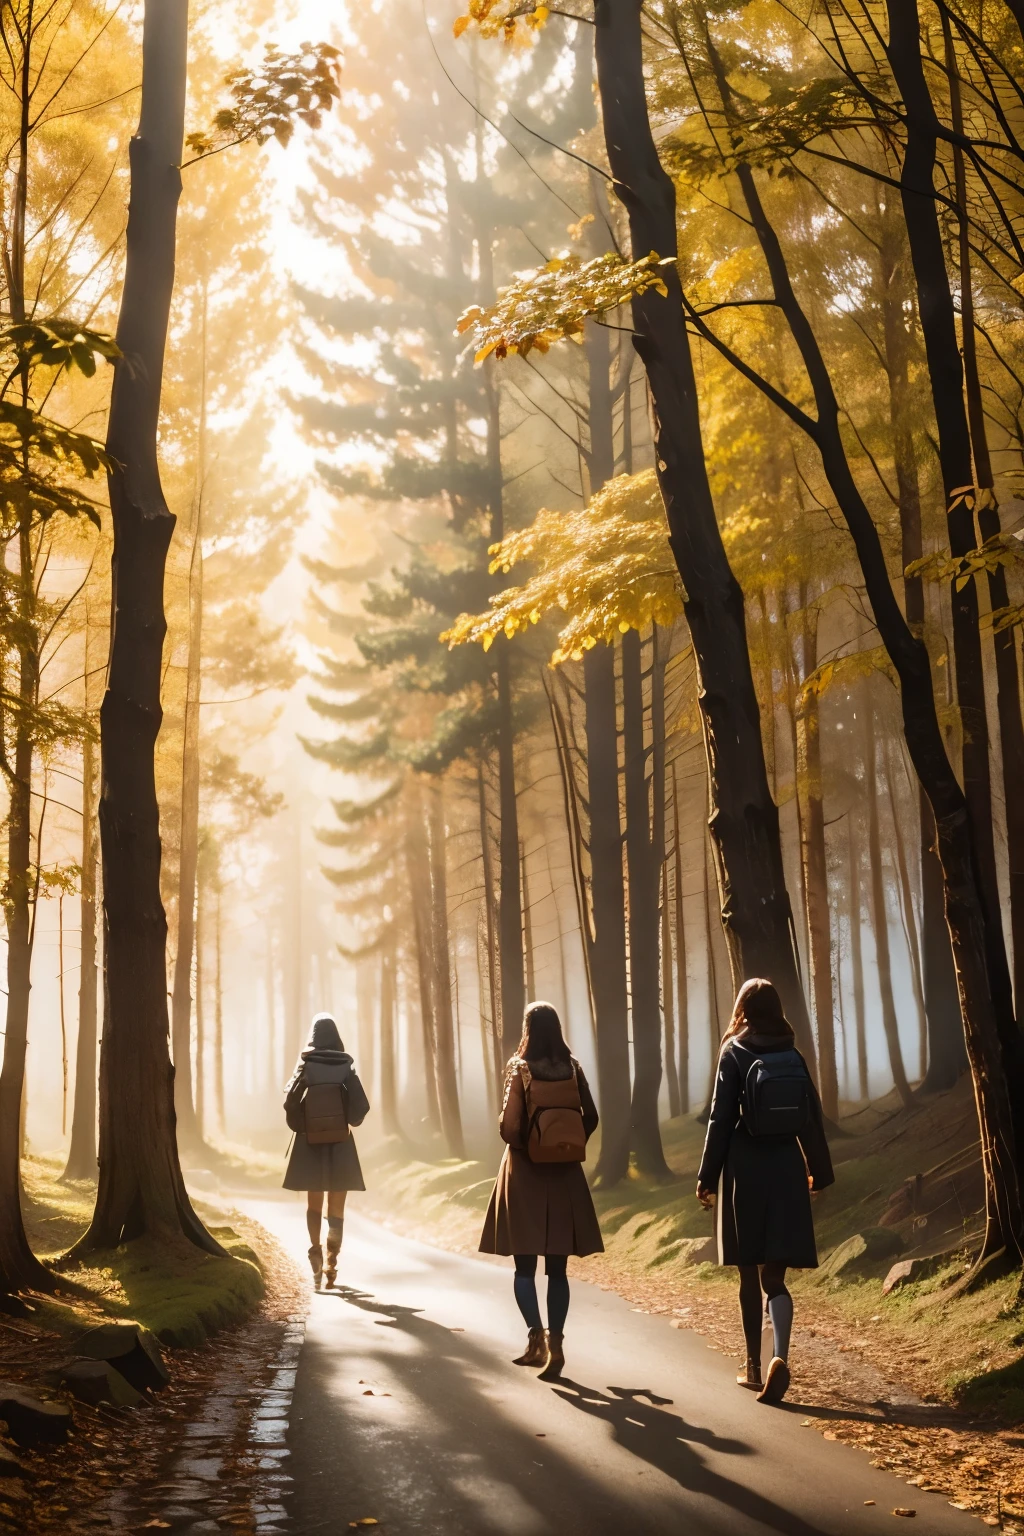 三個女孩在穿過樹林的小路上, 多霧路段, 秋天的風景, sunlight filtering through the 多霧路段 and branches